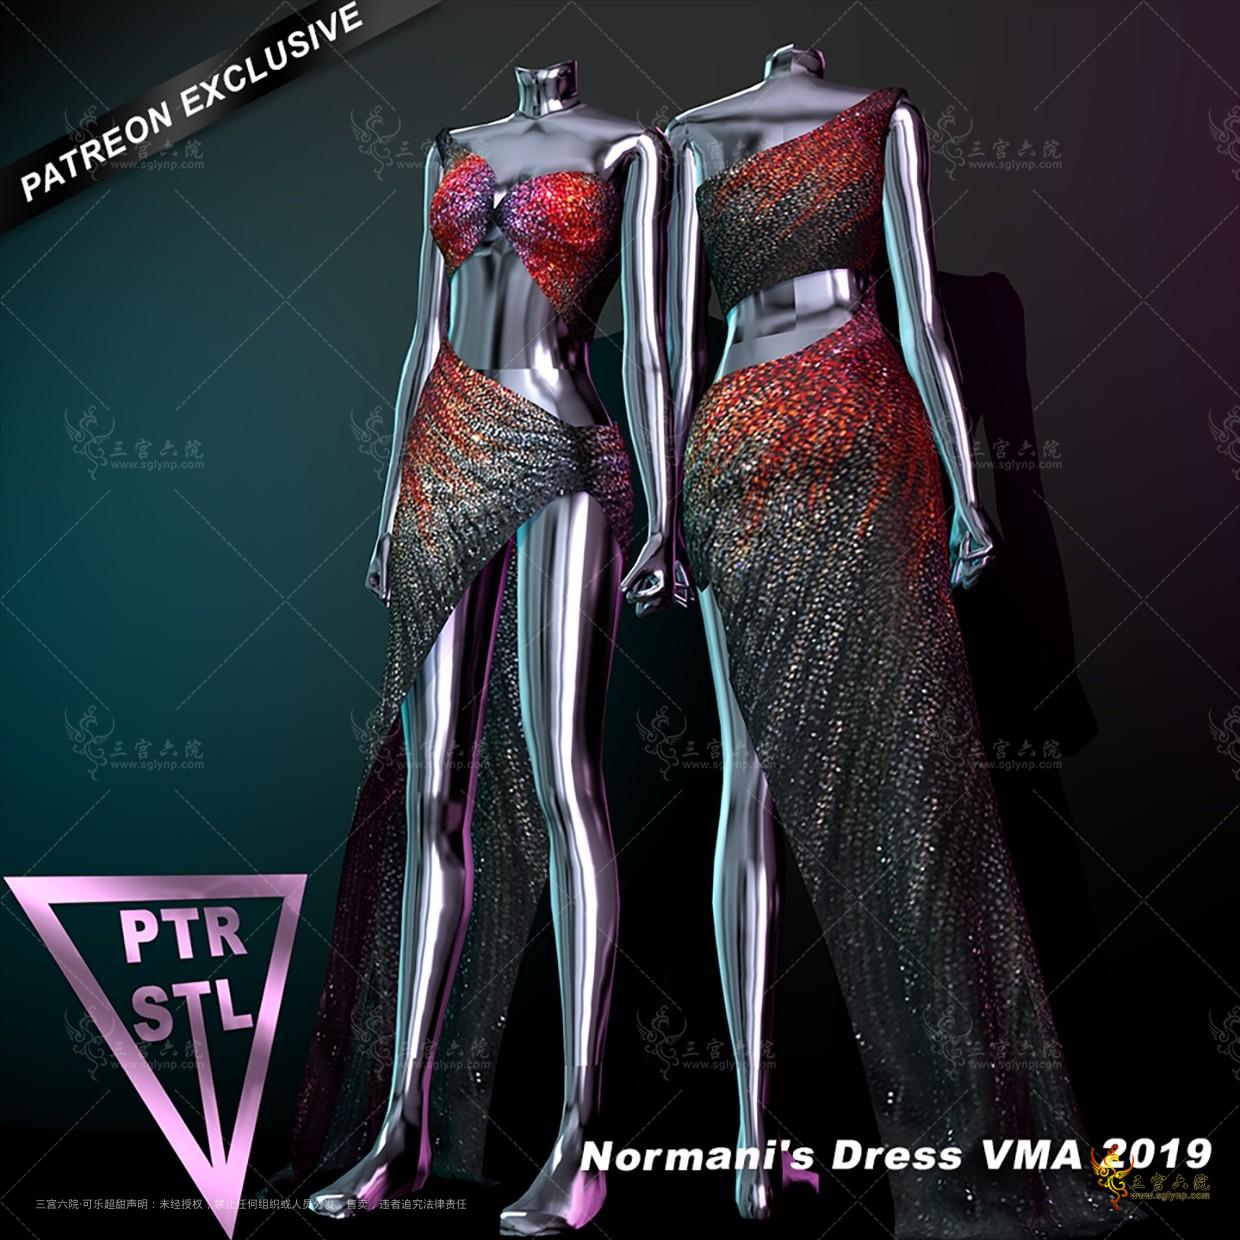 Pietro's Style Normani's Dress VMA 2019.png